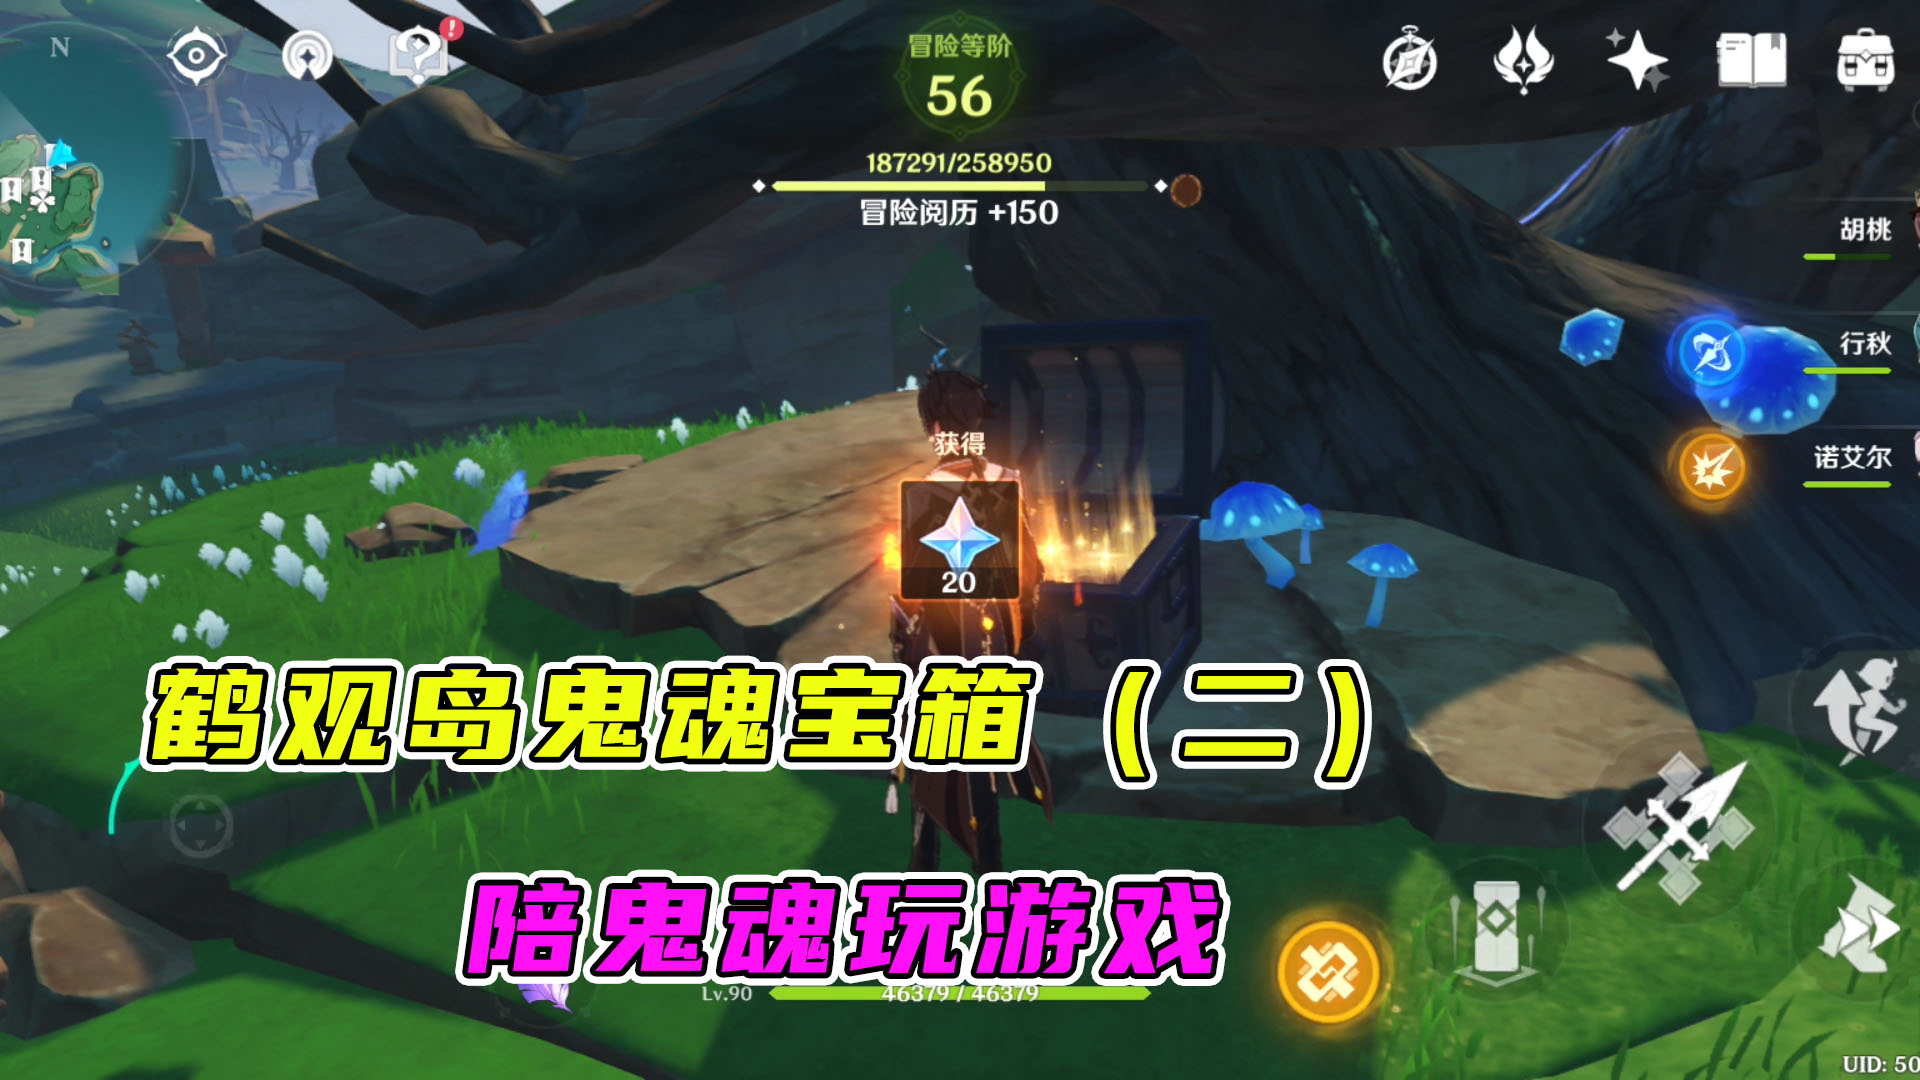 原神：鹤观岛鬼魂宝箱（二），与鬼魂玩游戏即可获取宝箱